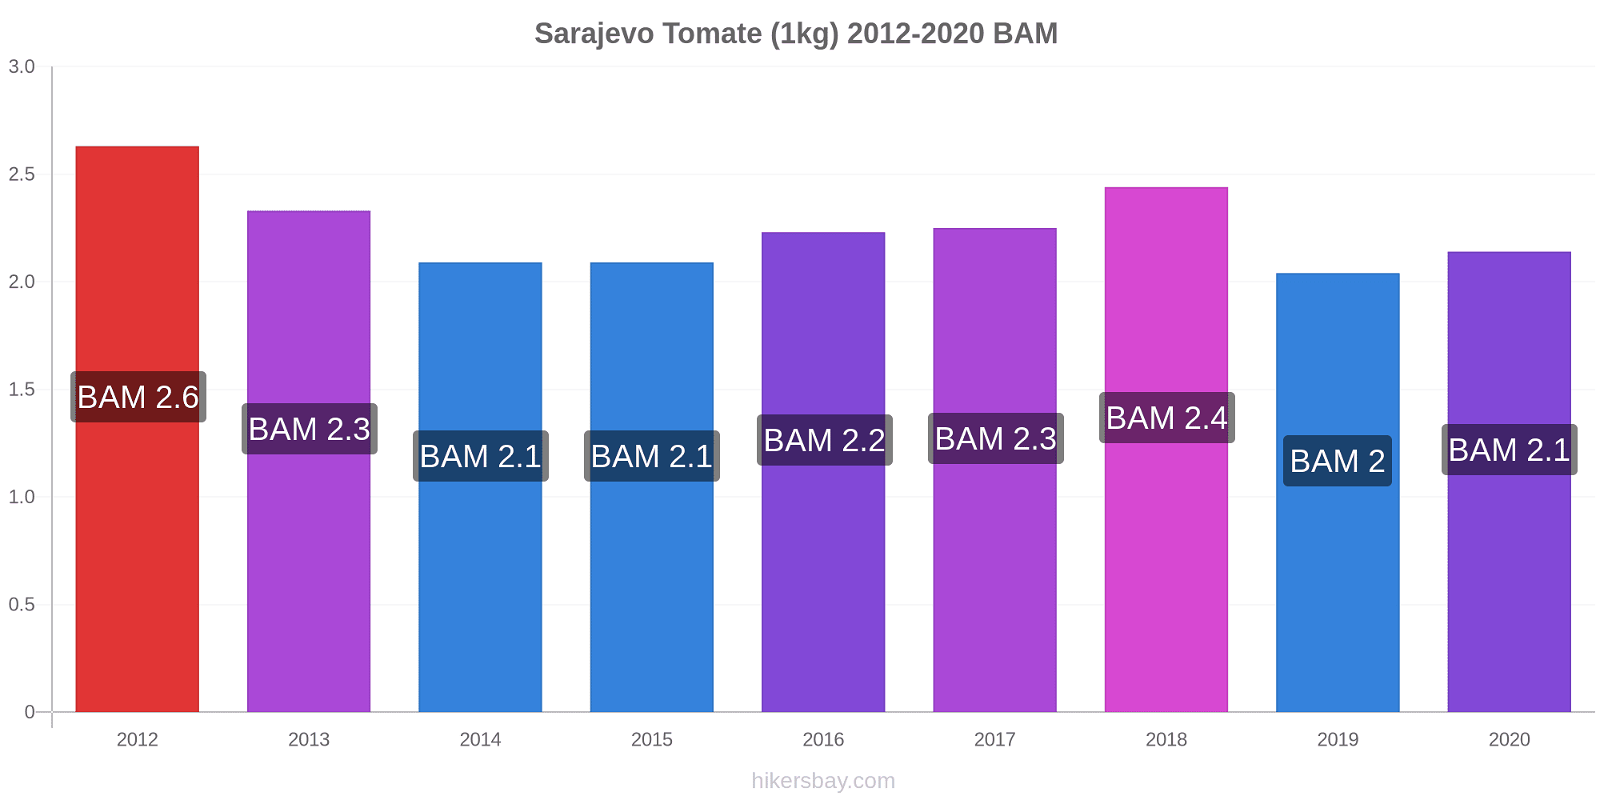 Sarajevo cambios de precios Tomate (1kg) hikersbay.com